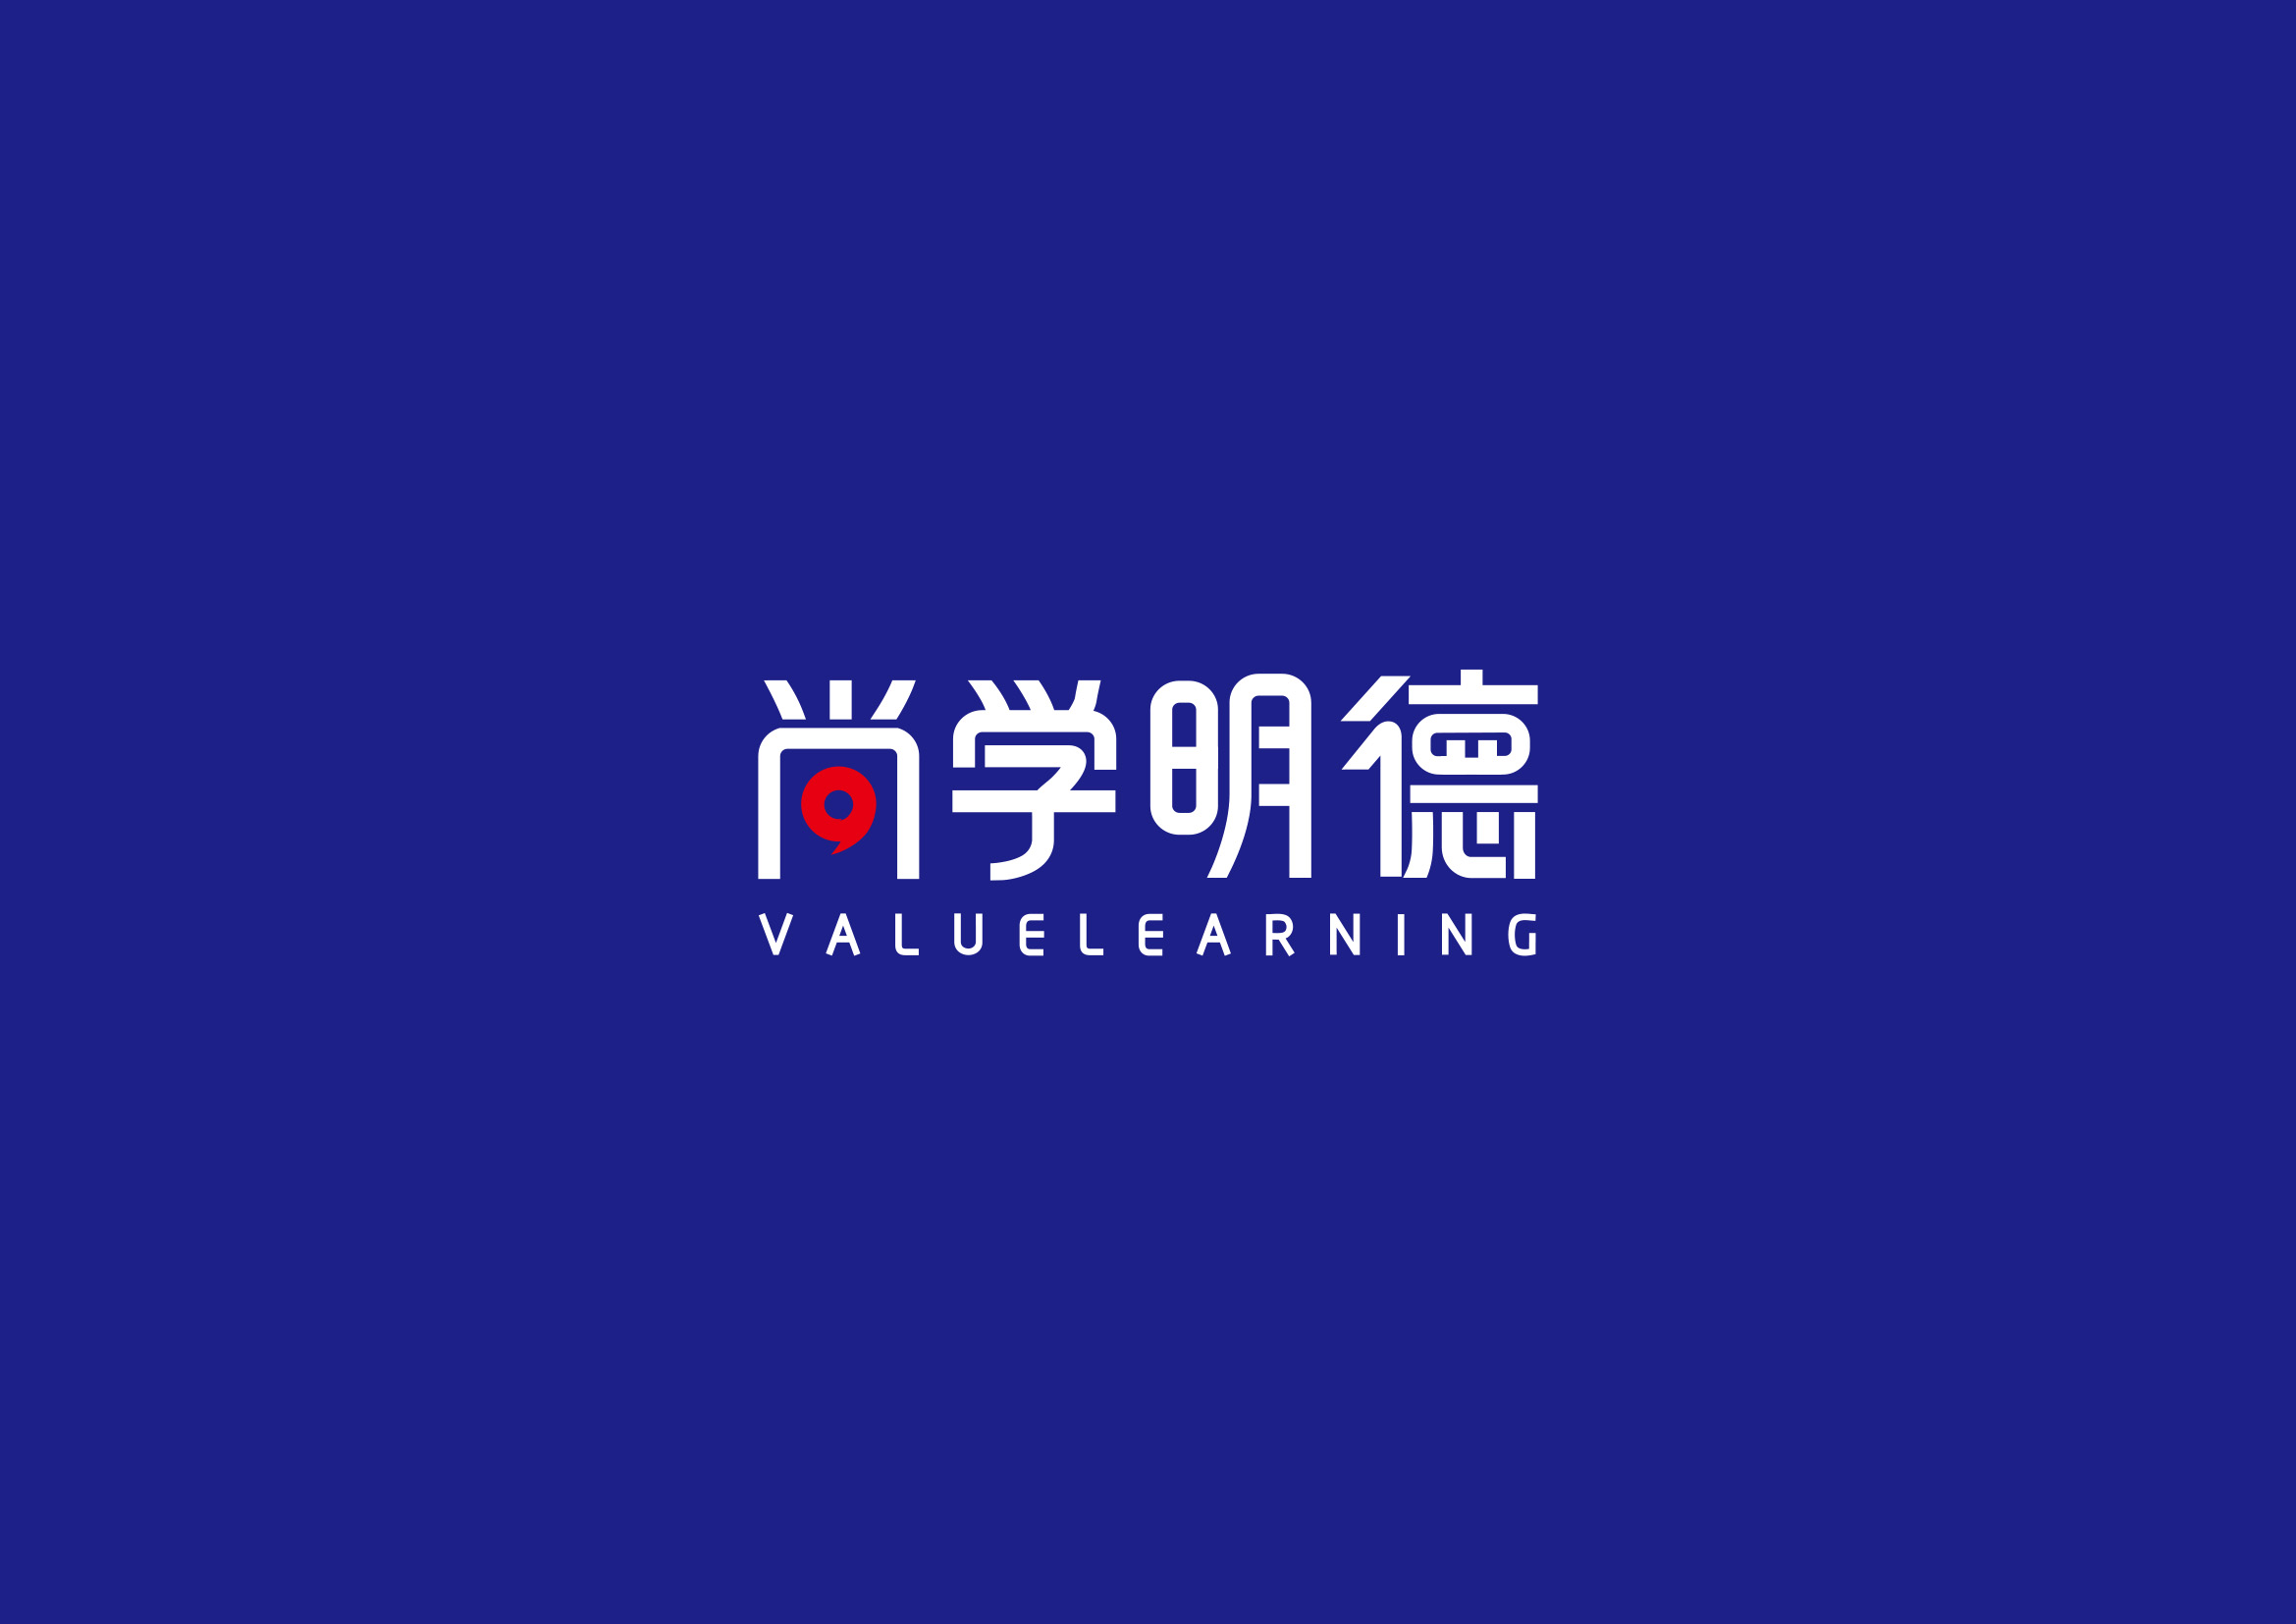 尚学明德字体logo-3